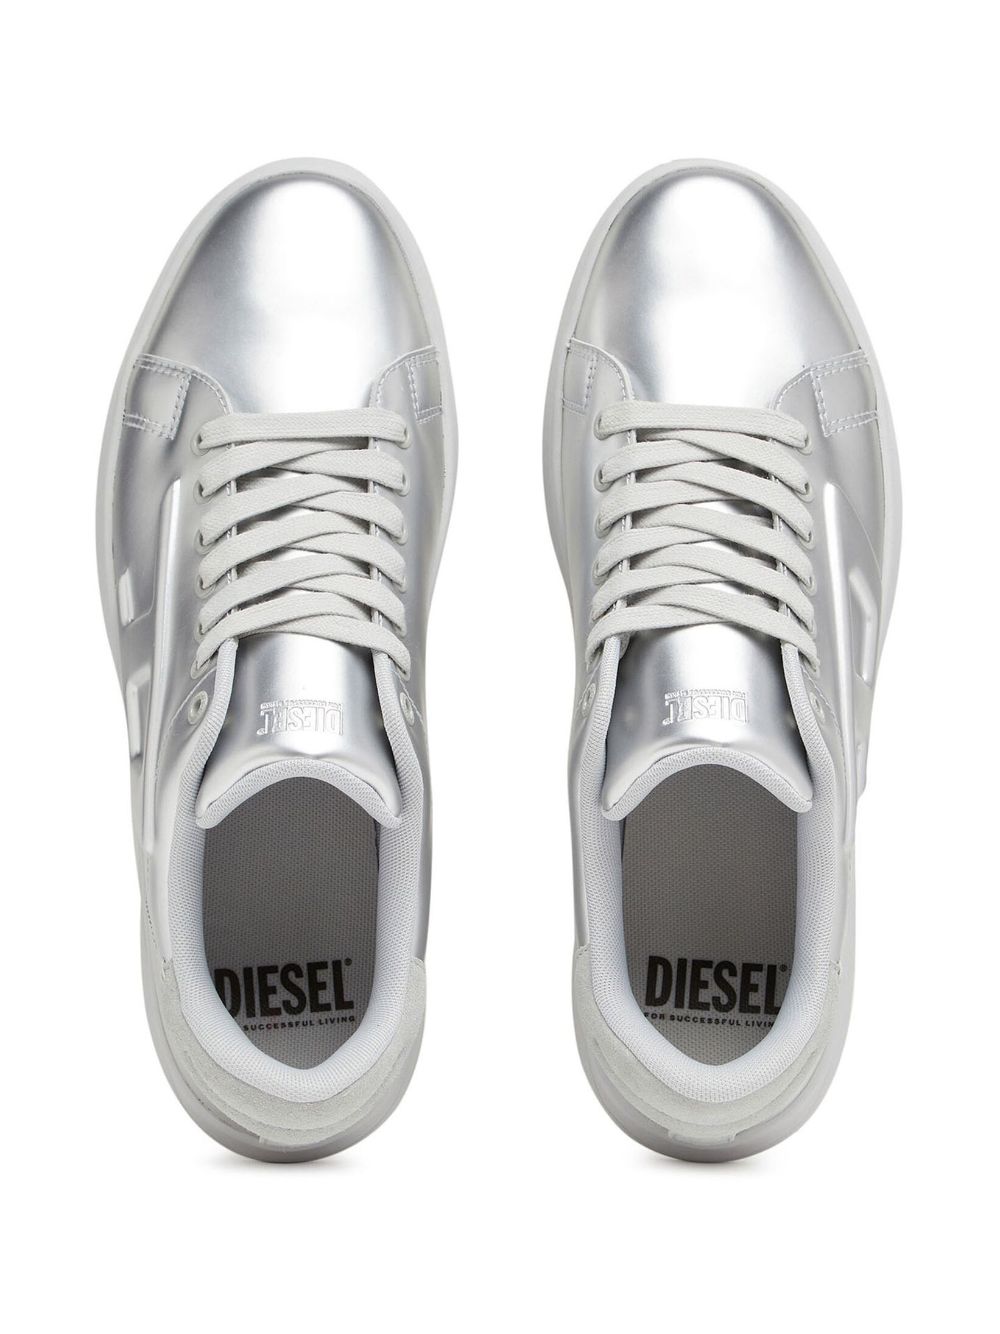 DIESEL, Silver Men's Sneakers